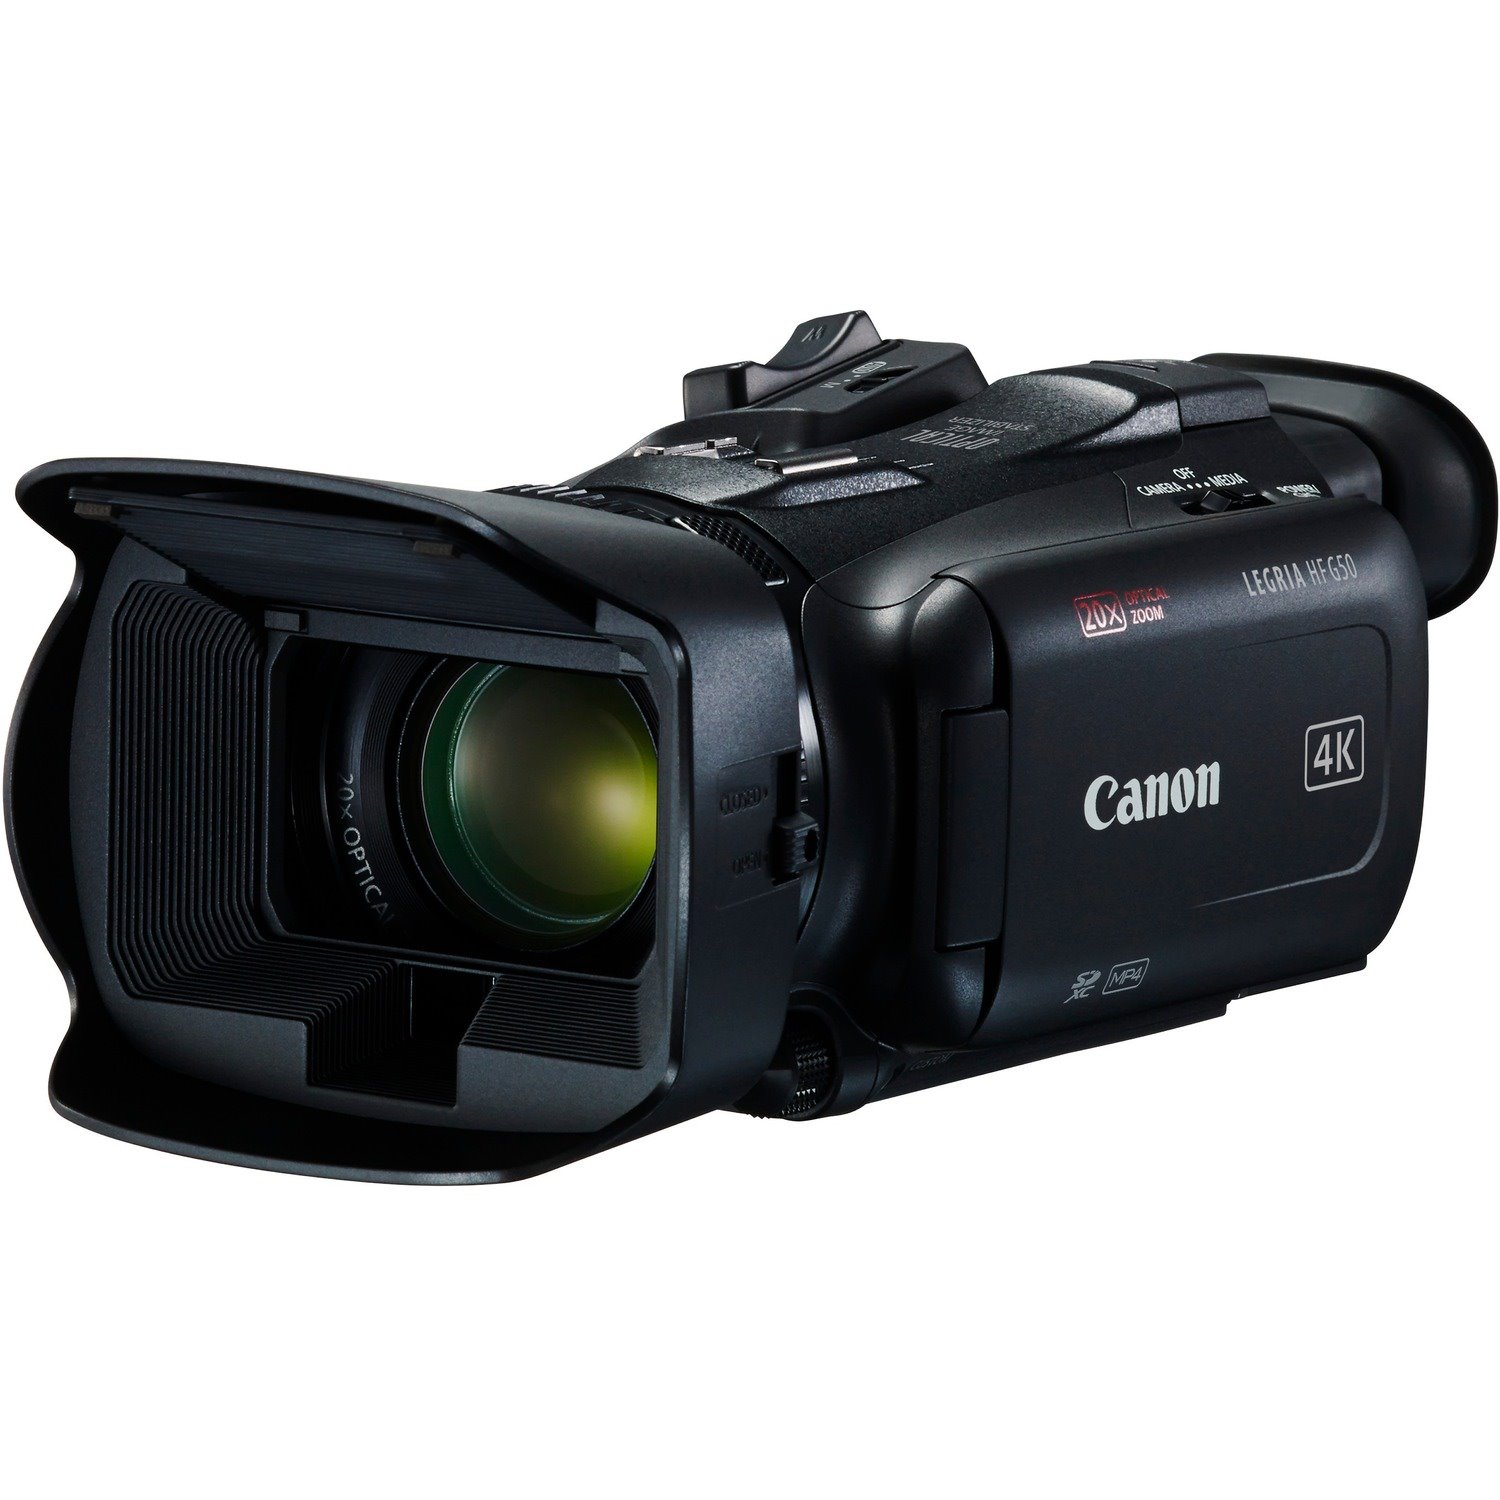 Canon VIXIA HF G50 Digital Camcorder - 7.6 cm (3") LCD Touchscreen - CMOS - 4K - Black